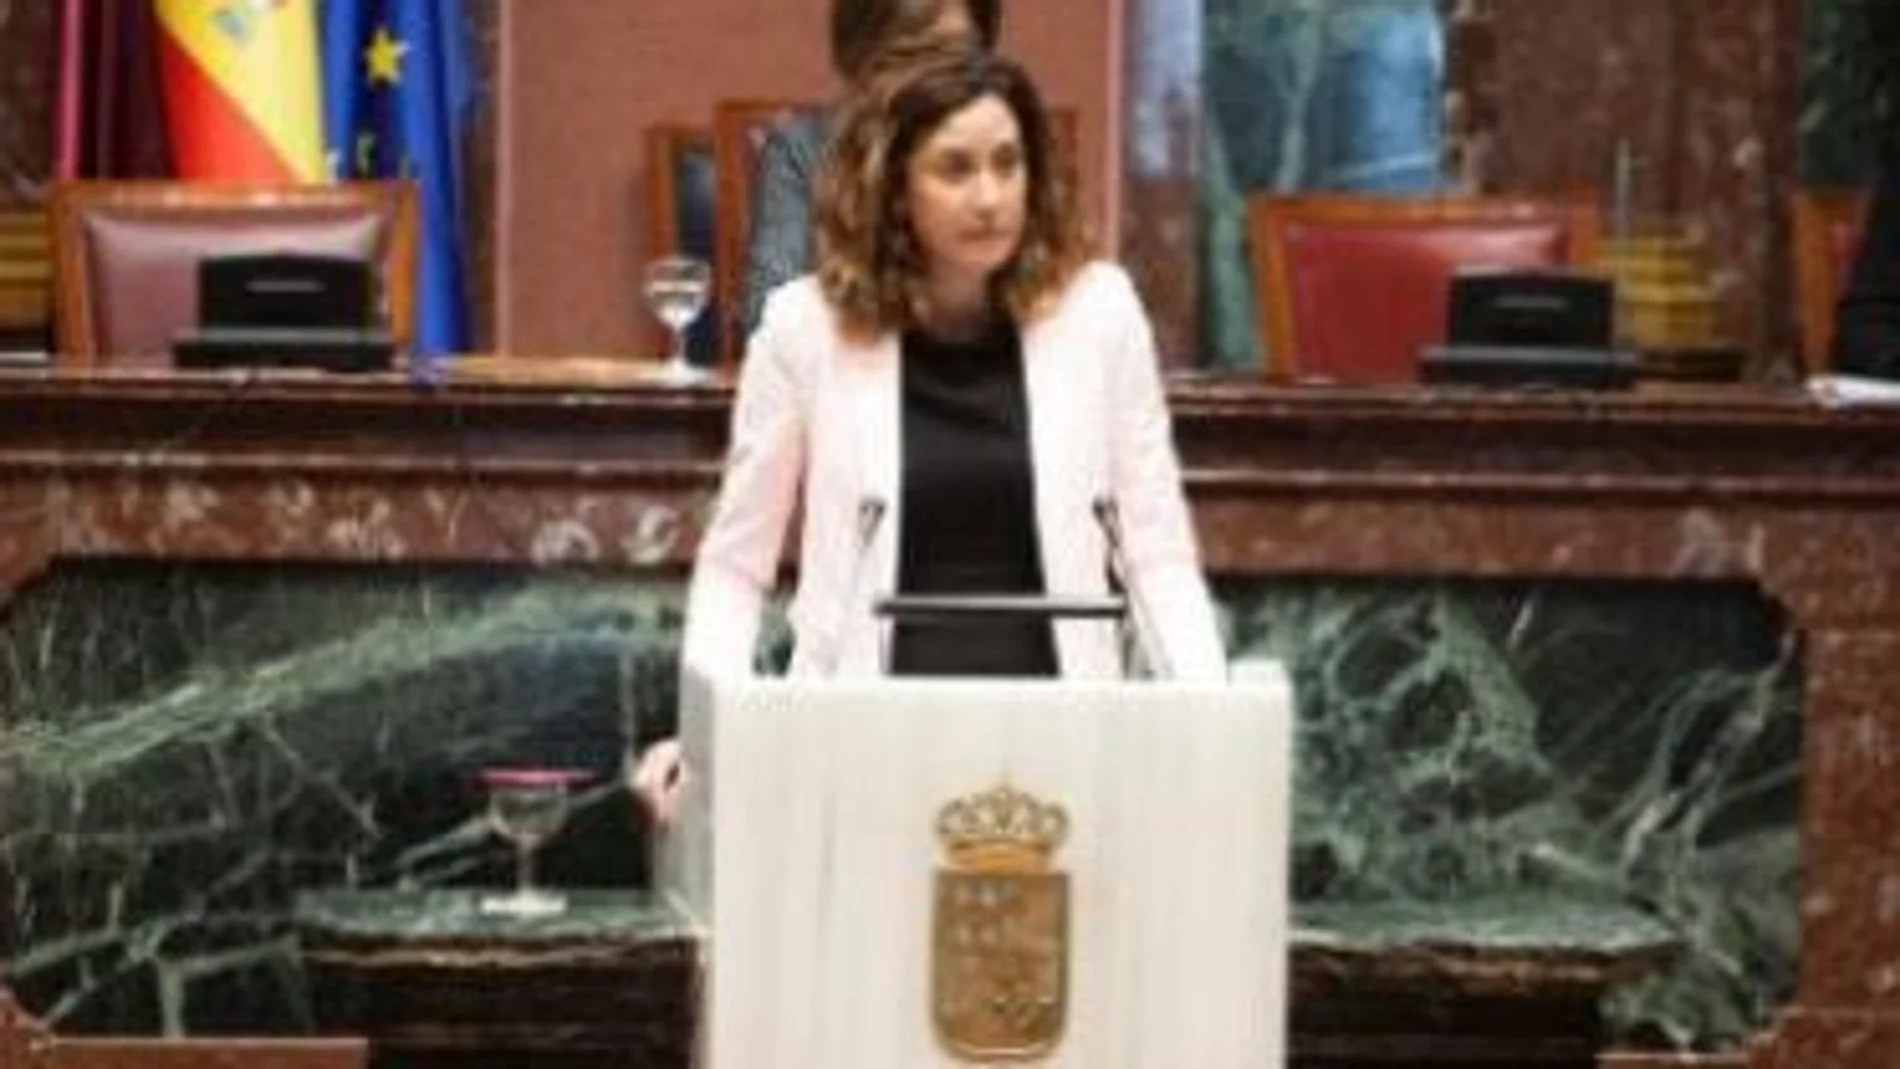 La vicesecretaria de Política Autonómica del PP regional, Patricia Fernández, criticó ayer duramente el Real Decreto Ley aprobado el pasado 3 de agosto por el Gobierno de Pedro Sánchez/La Razón